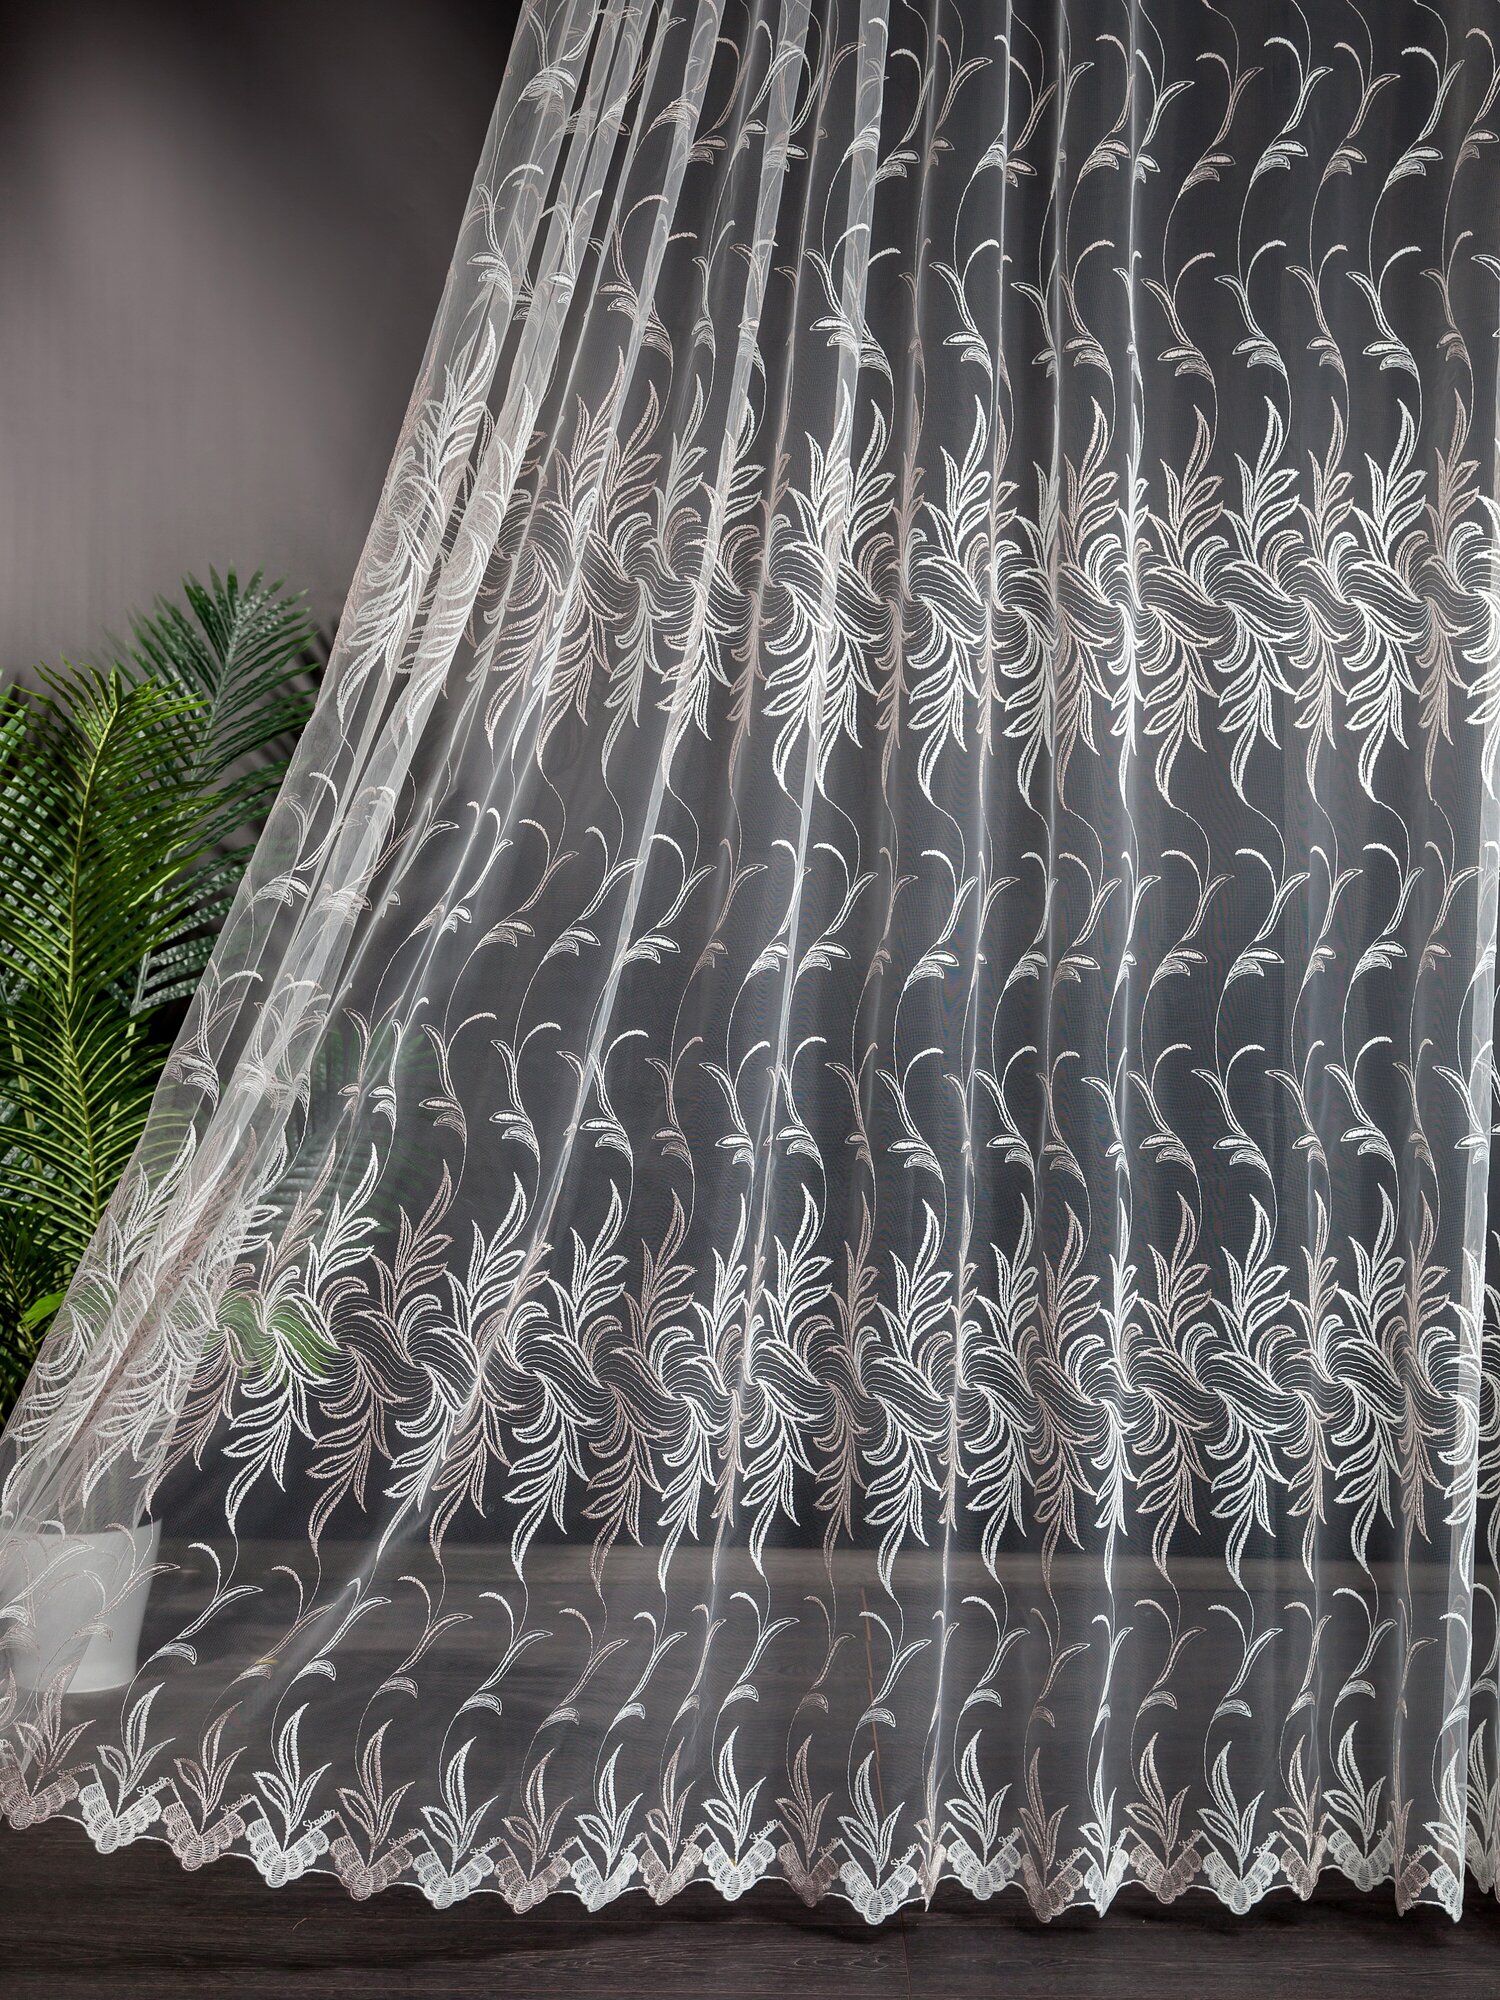 Тюль сетка с вышивкой "Плетёнка" на шторной ленте, размер 300х250см.